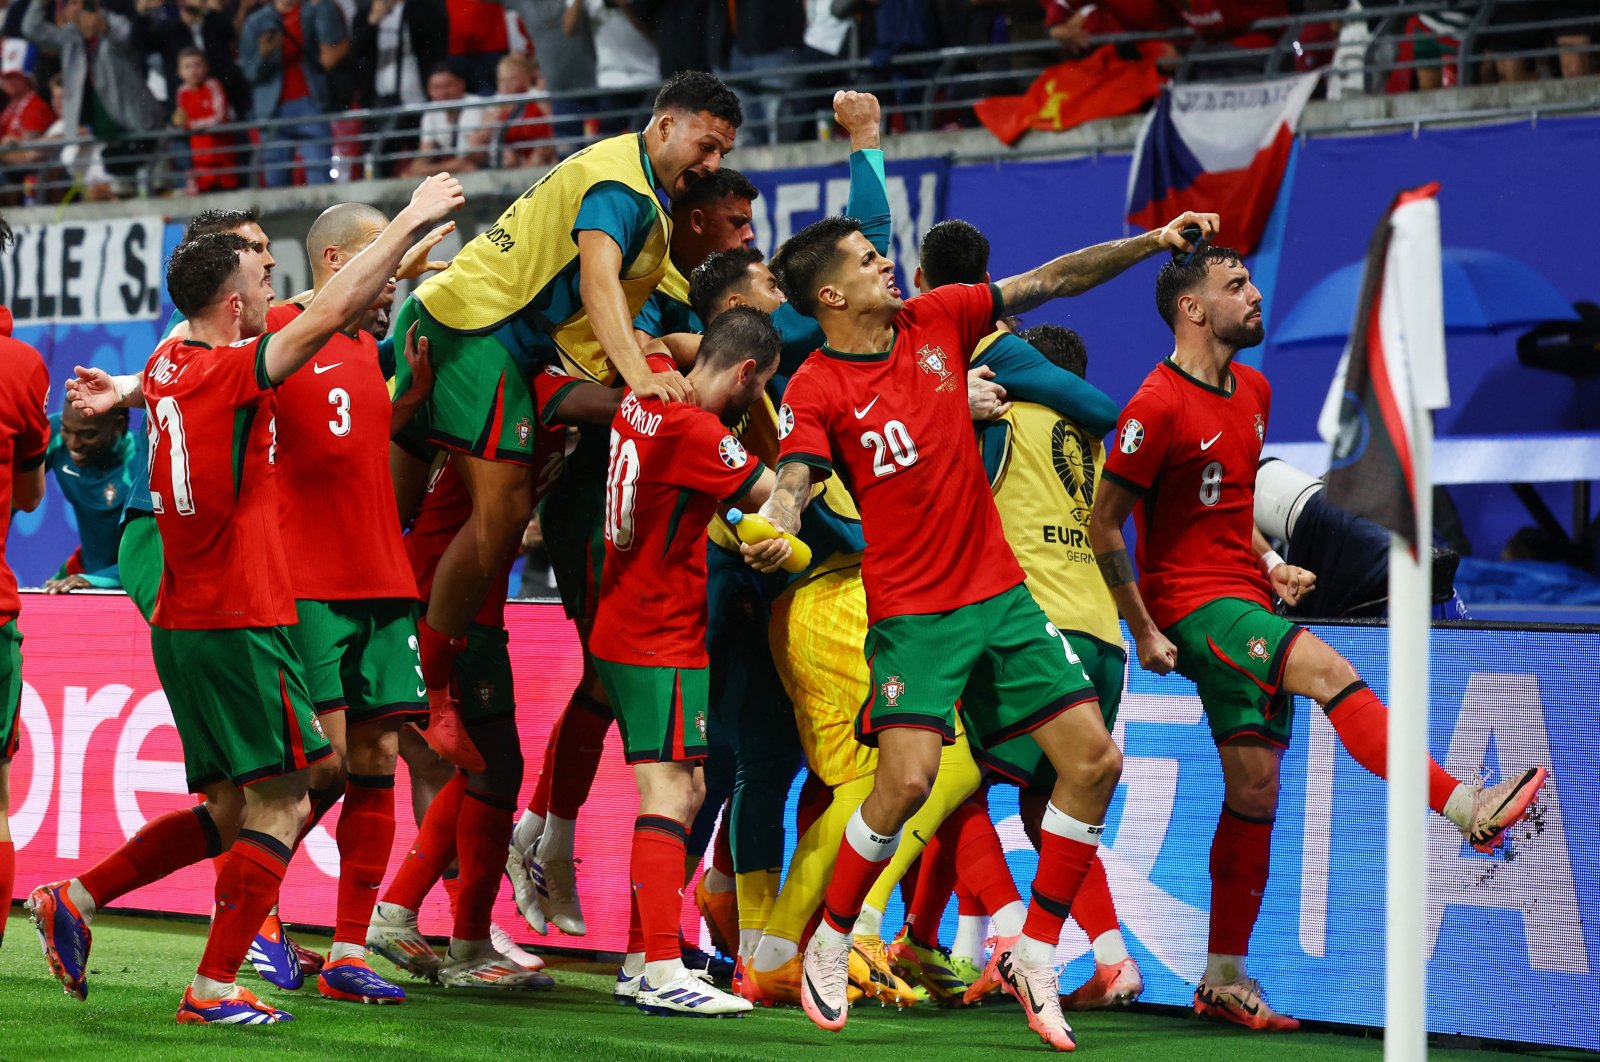 Portugalsko vyrve vítězství z čelistí Čechů pozdním gólem Conceição